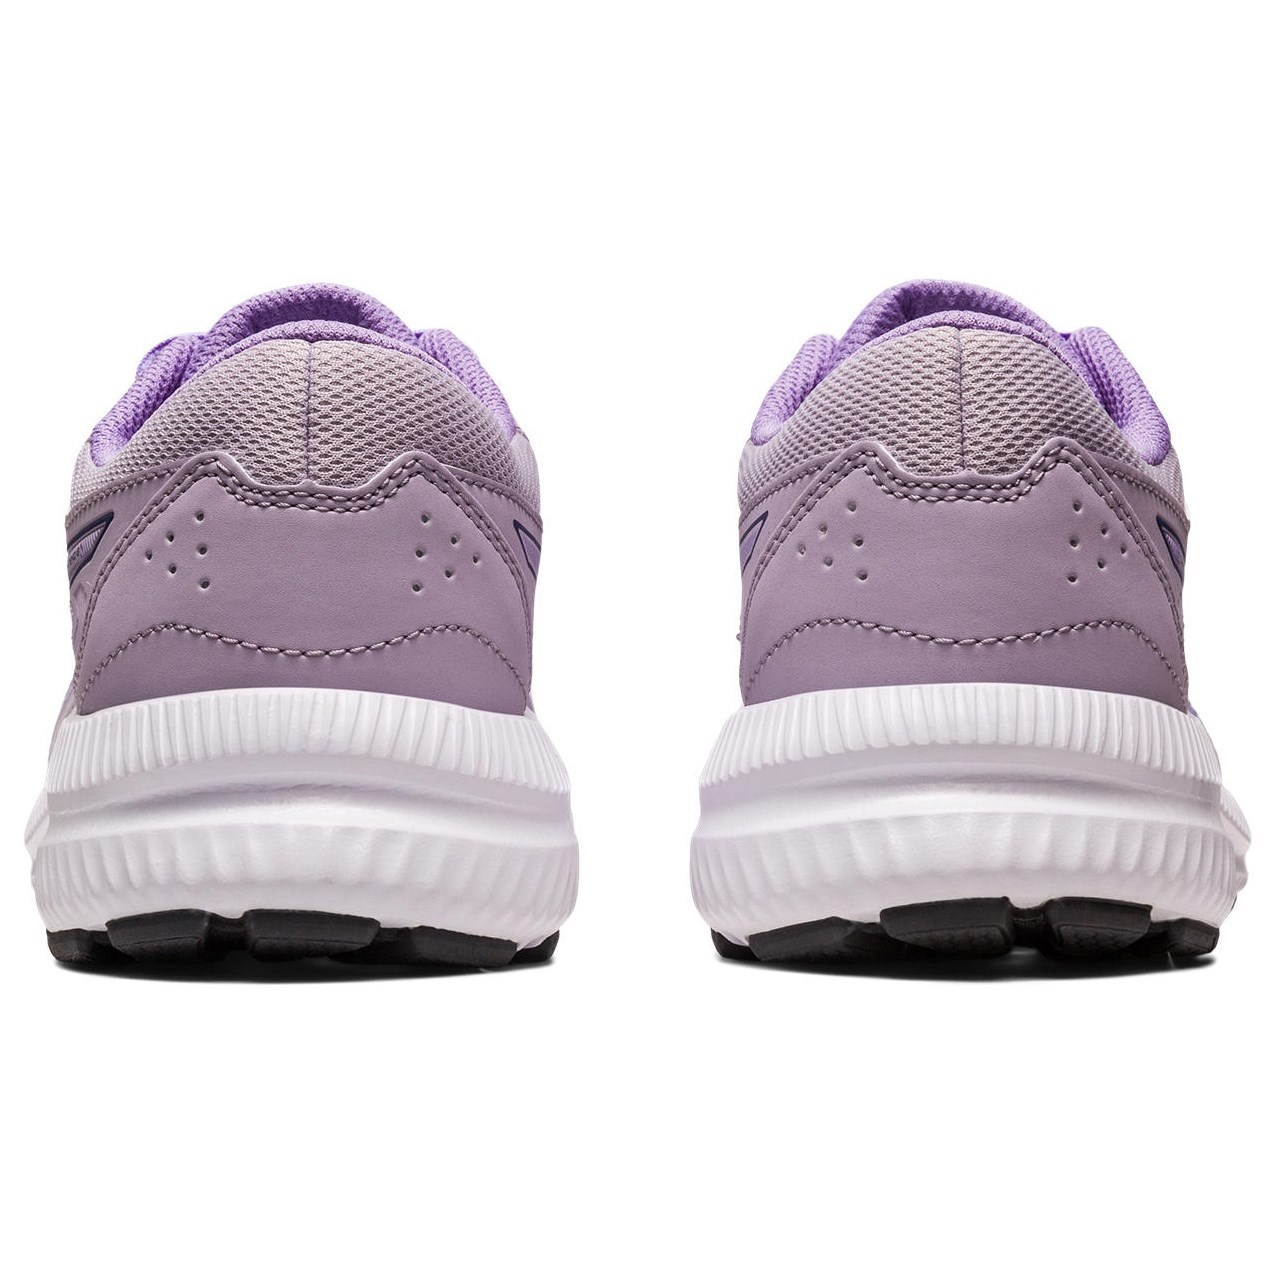 Asics Contend 8 GS - Kids Running Shoes - Dusk Violet/Digital Violet ...